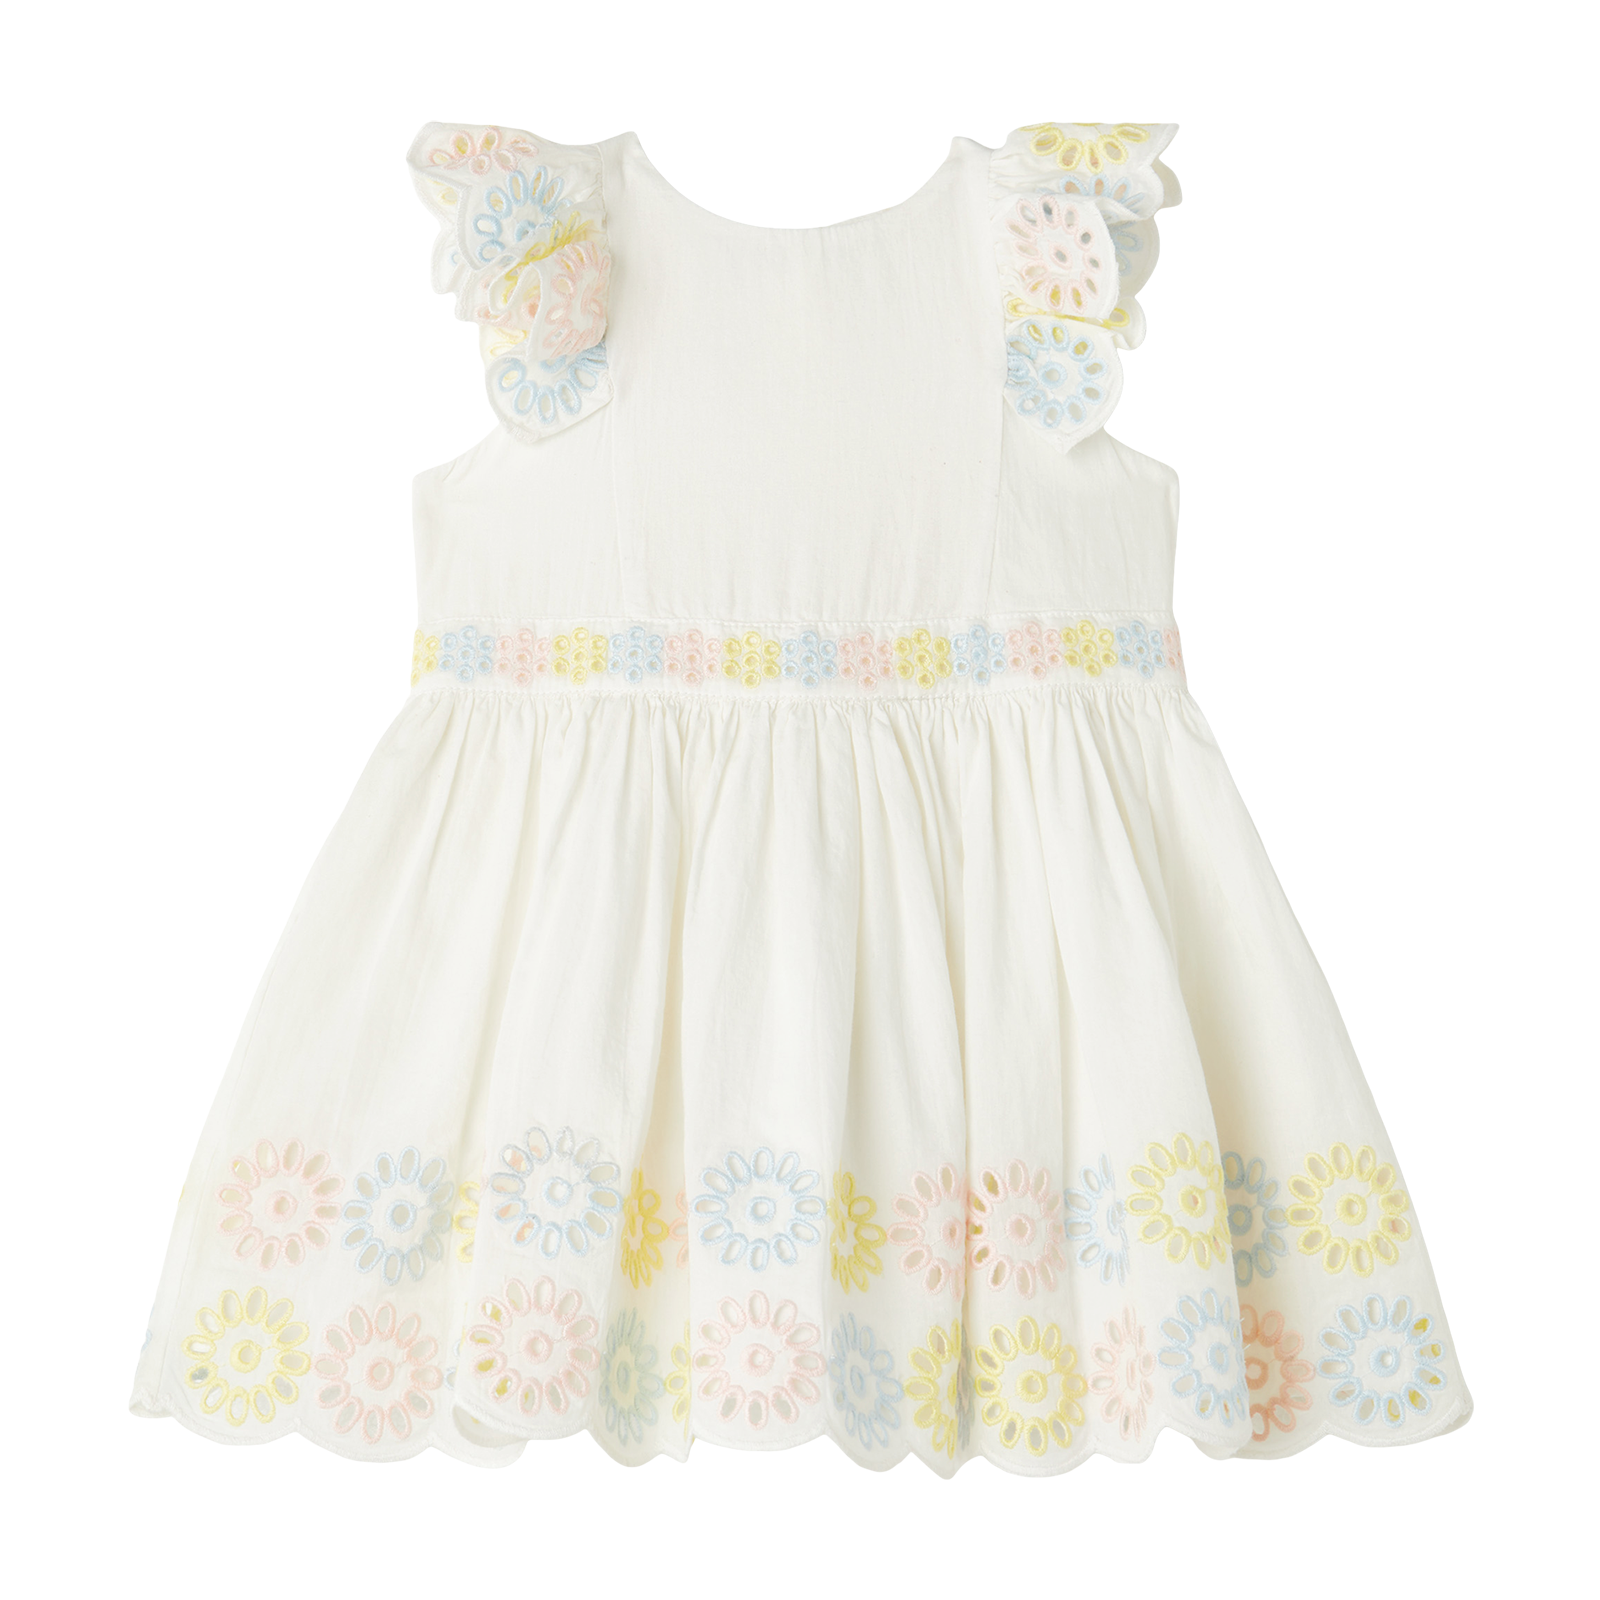 Baby Kleid mit Stickereien in Weiß